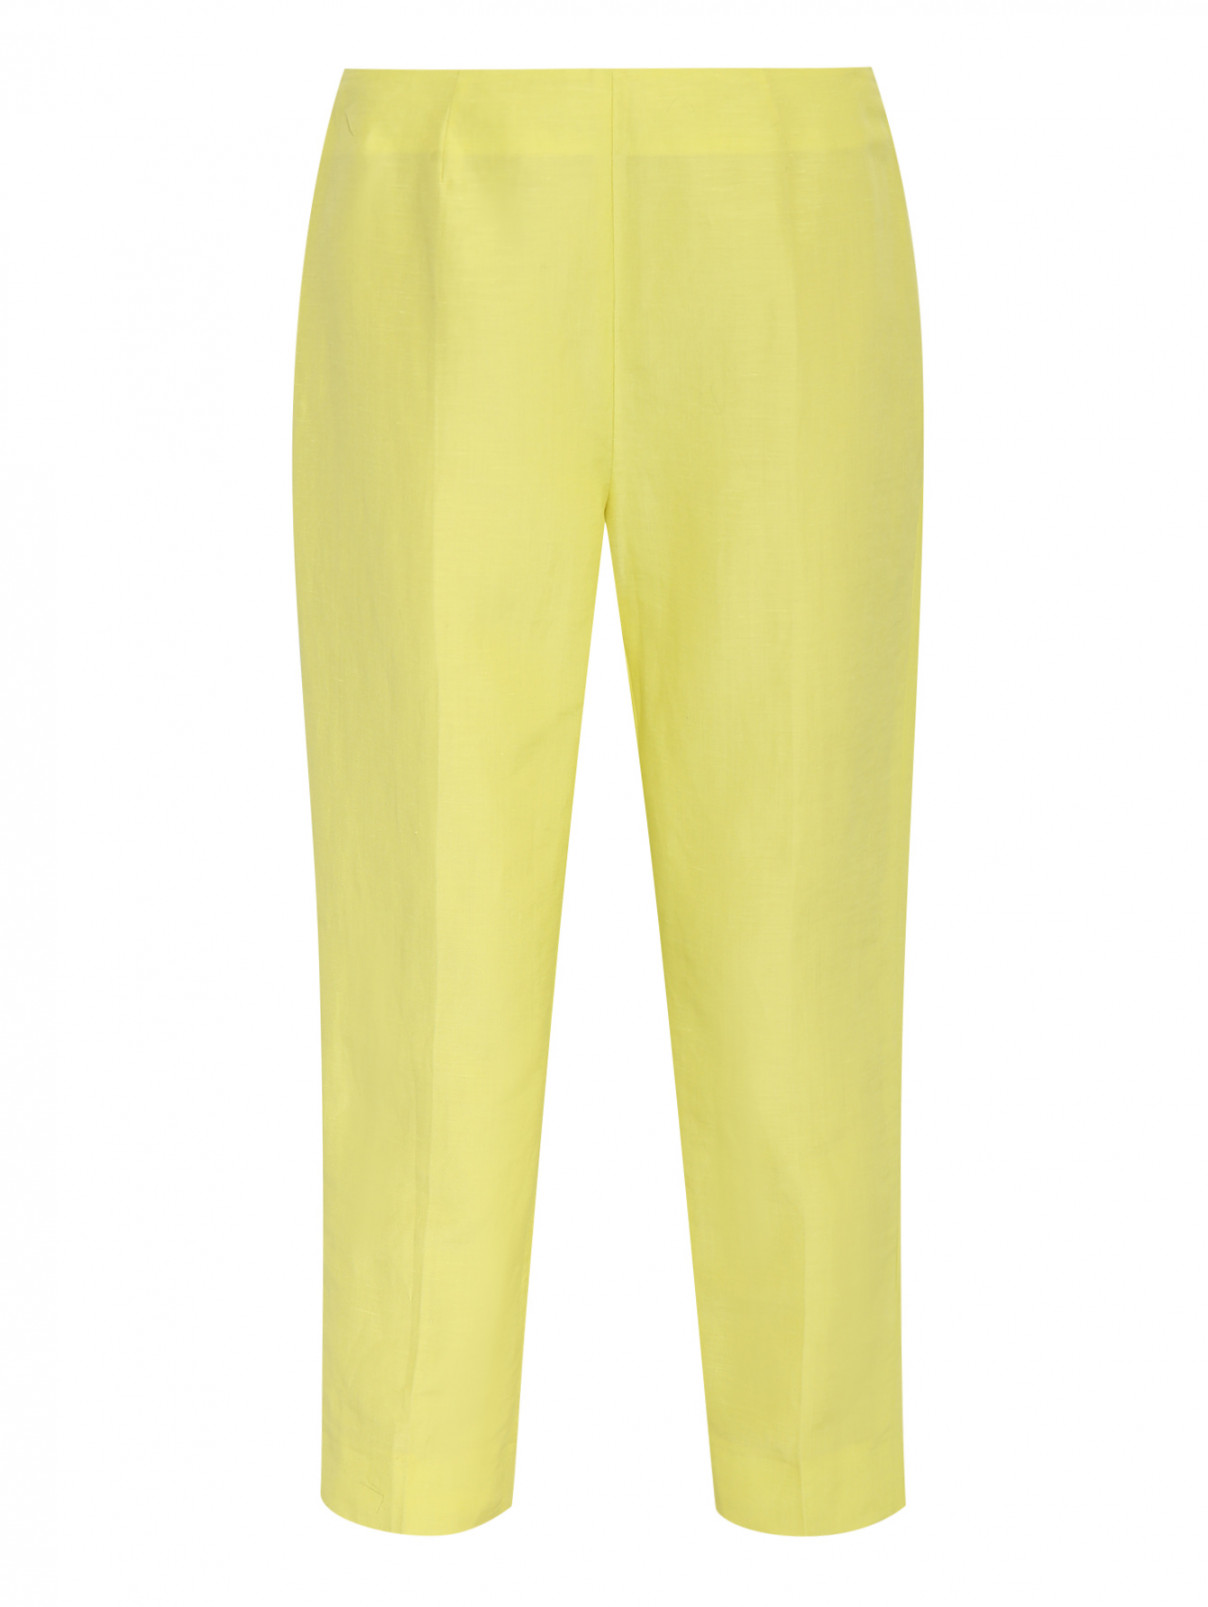 Укороченные брюки из льна и шелка Armani Collezioni  –  Общий вид  – Цвет:  Желтый